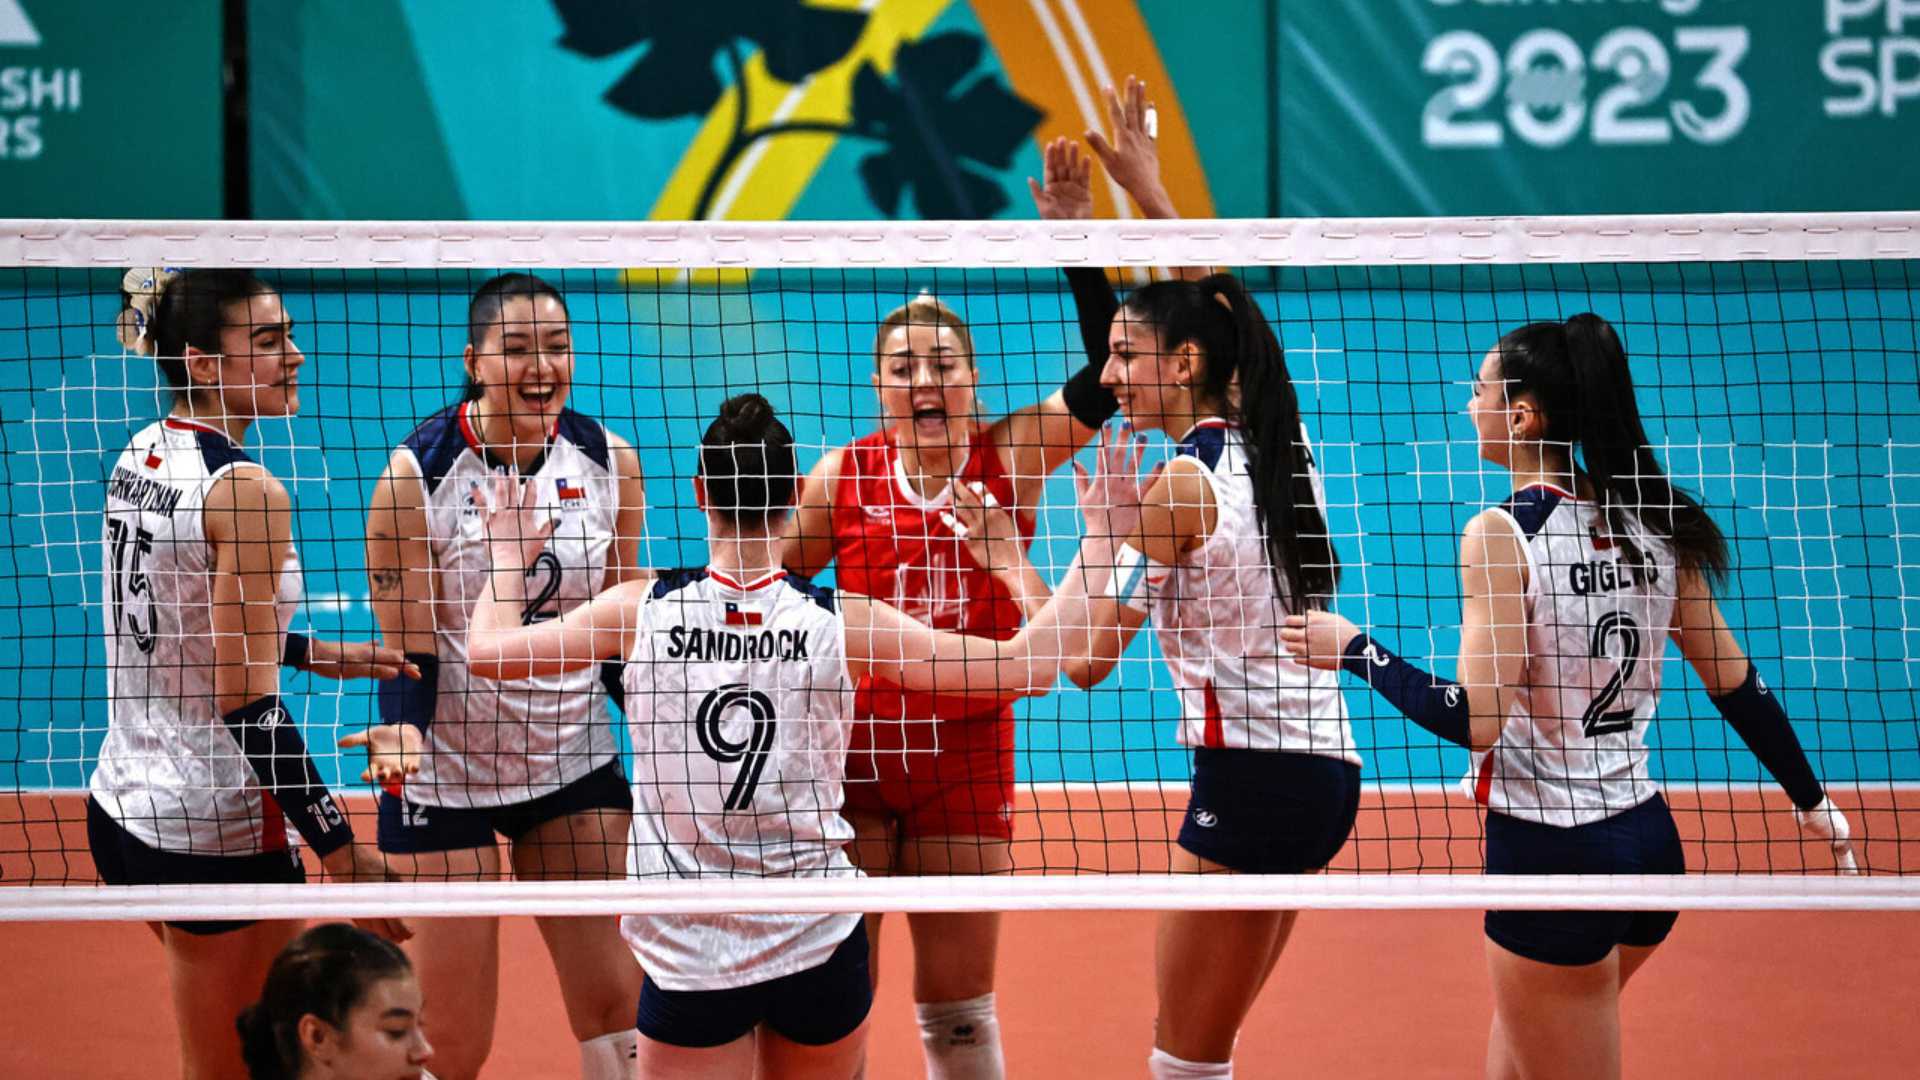 Chile vence a Colombia y logra un histórico quinto lugar en el vóleibol femenino